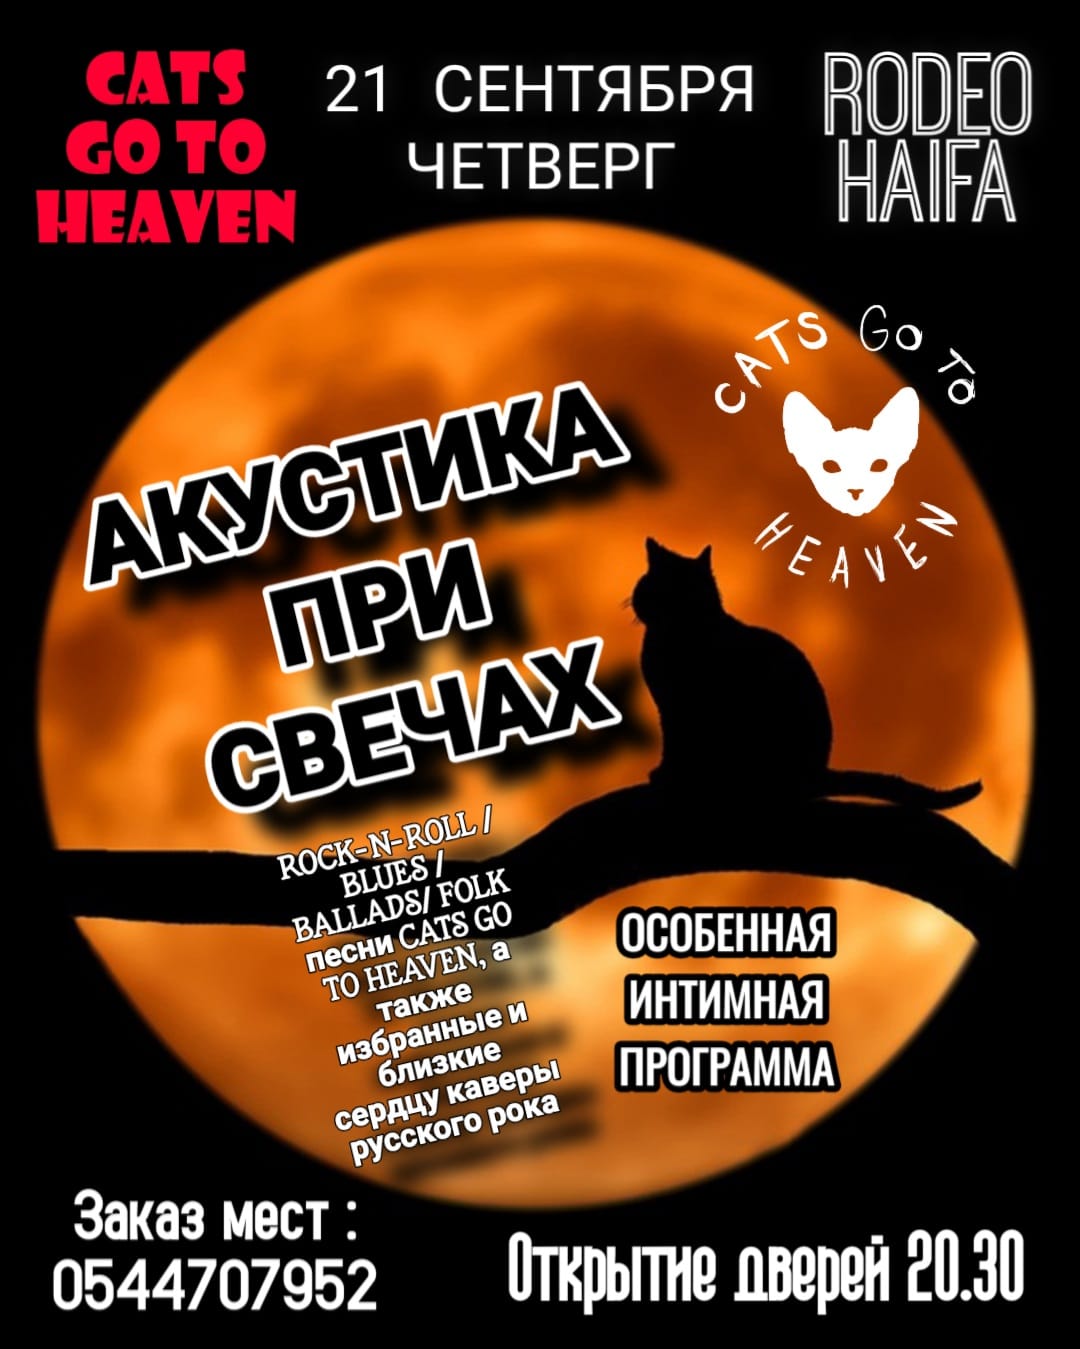 CATS GO TO HEAVEN at Rodeo Haifa